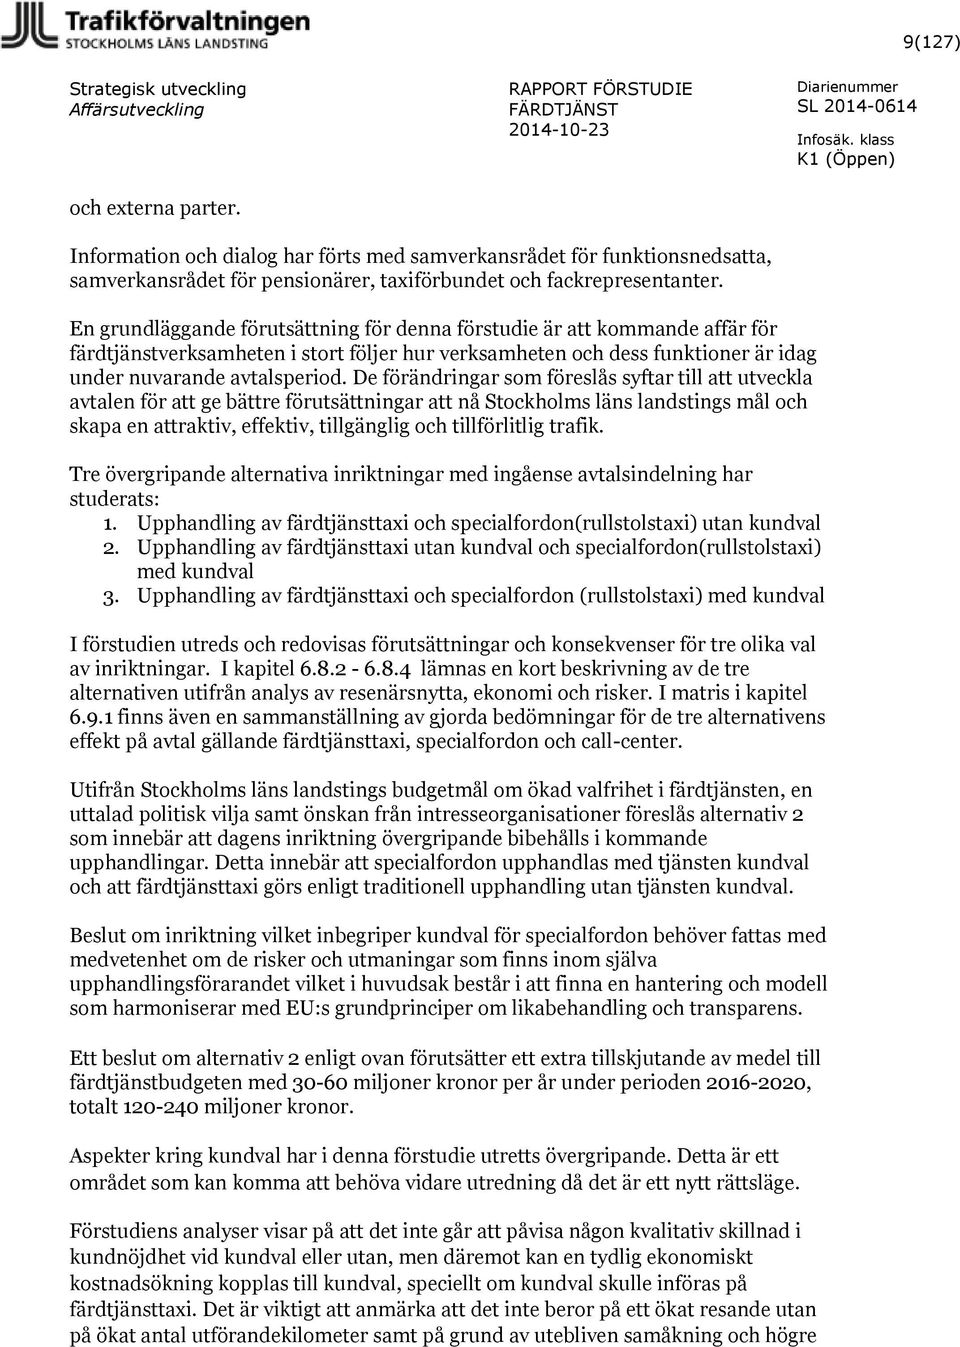 De förändringar som föreslås syftar till att utveckla avtalen för att ge bättre förutsättningar att nå Stockholms läns landstings mål och skapa en attraktiv, effektiv, tillgänglig och tillförlitlig